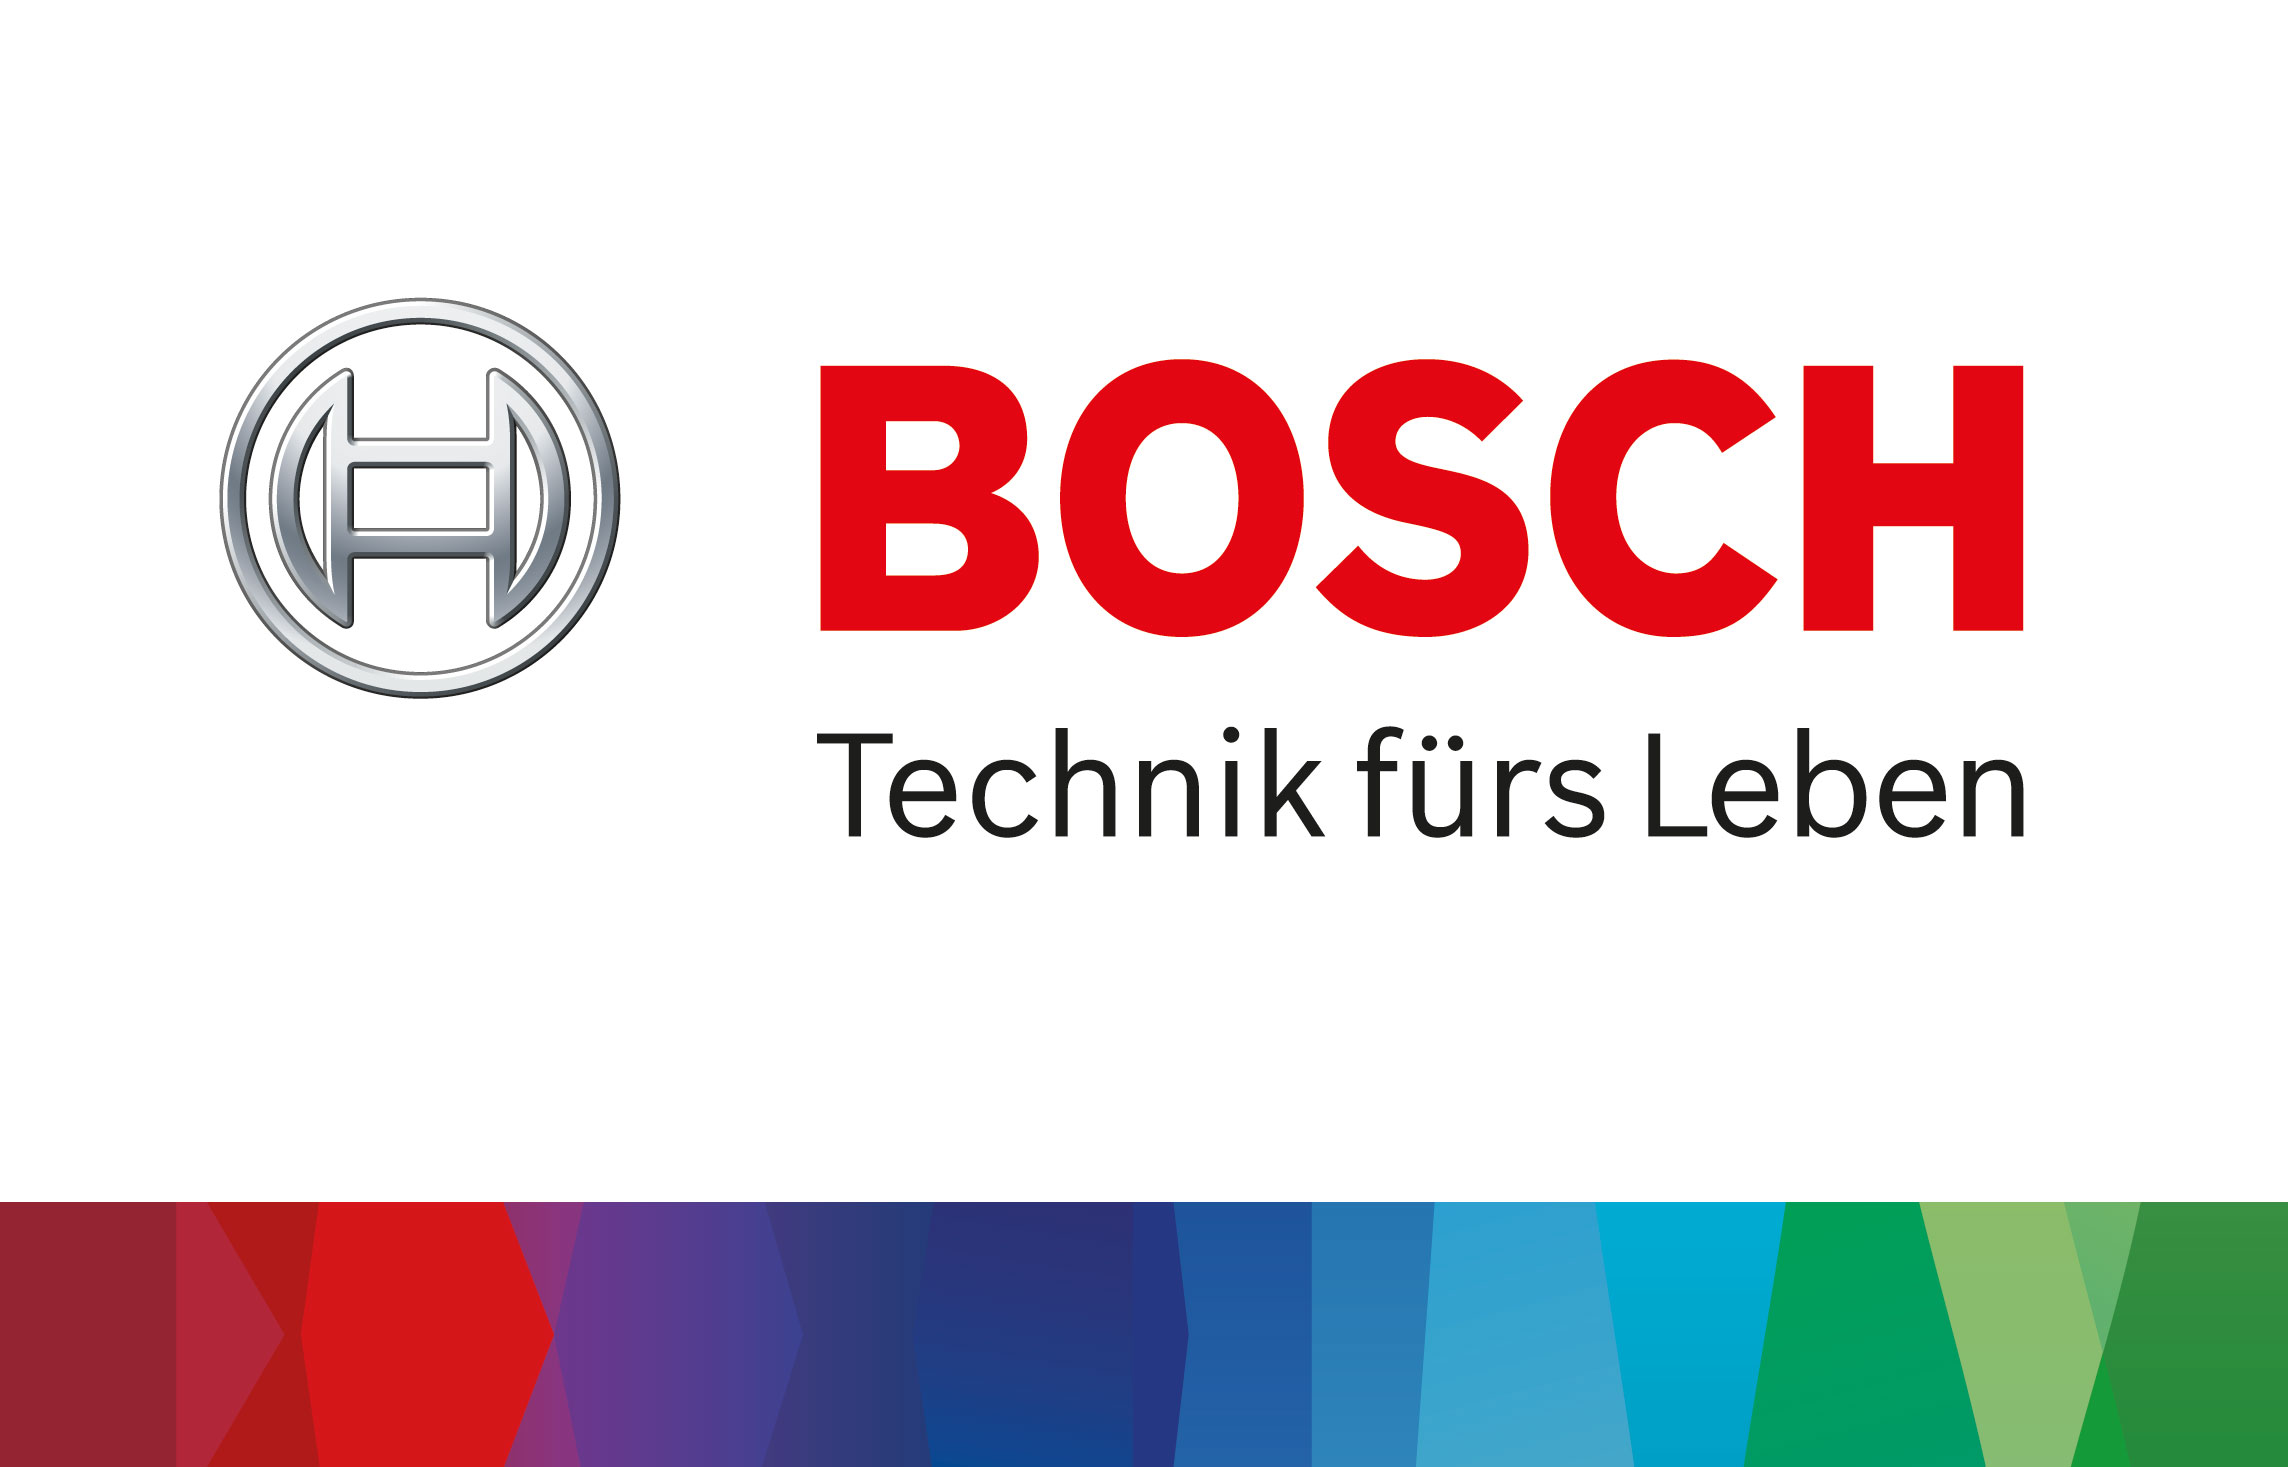 Robert Bosch Hausgeräte GmbH